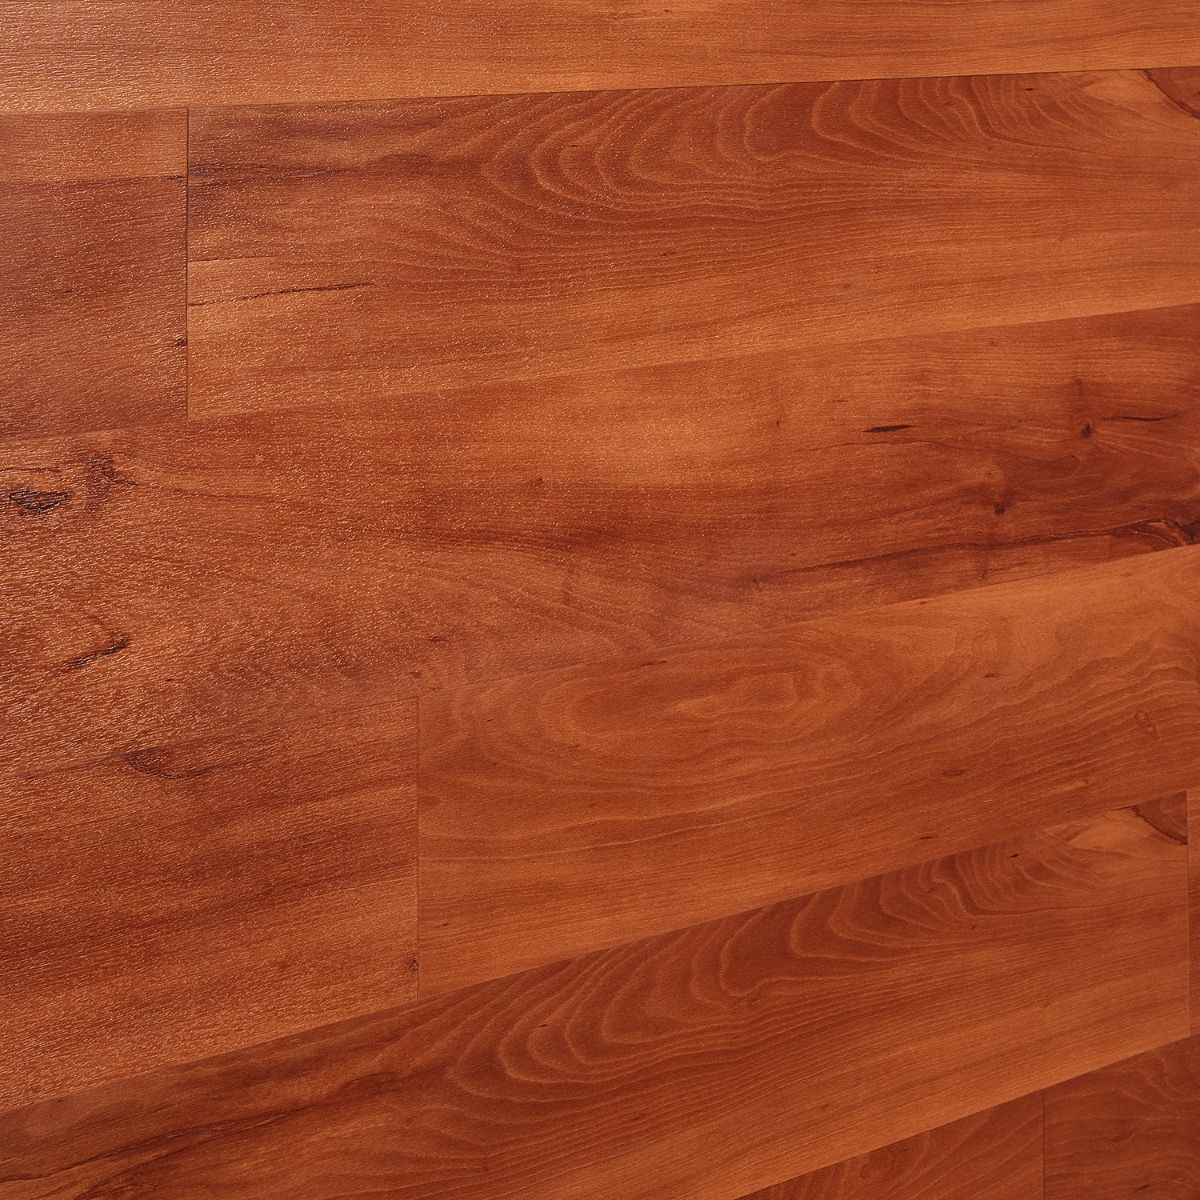 Artmore Tile Loseta Wood Look American, Cherry Wood Effect Vinyl Flooring